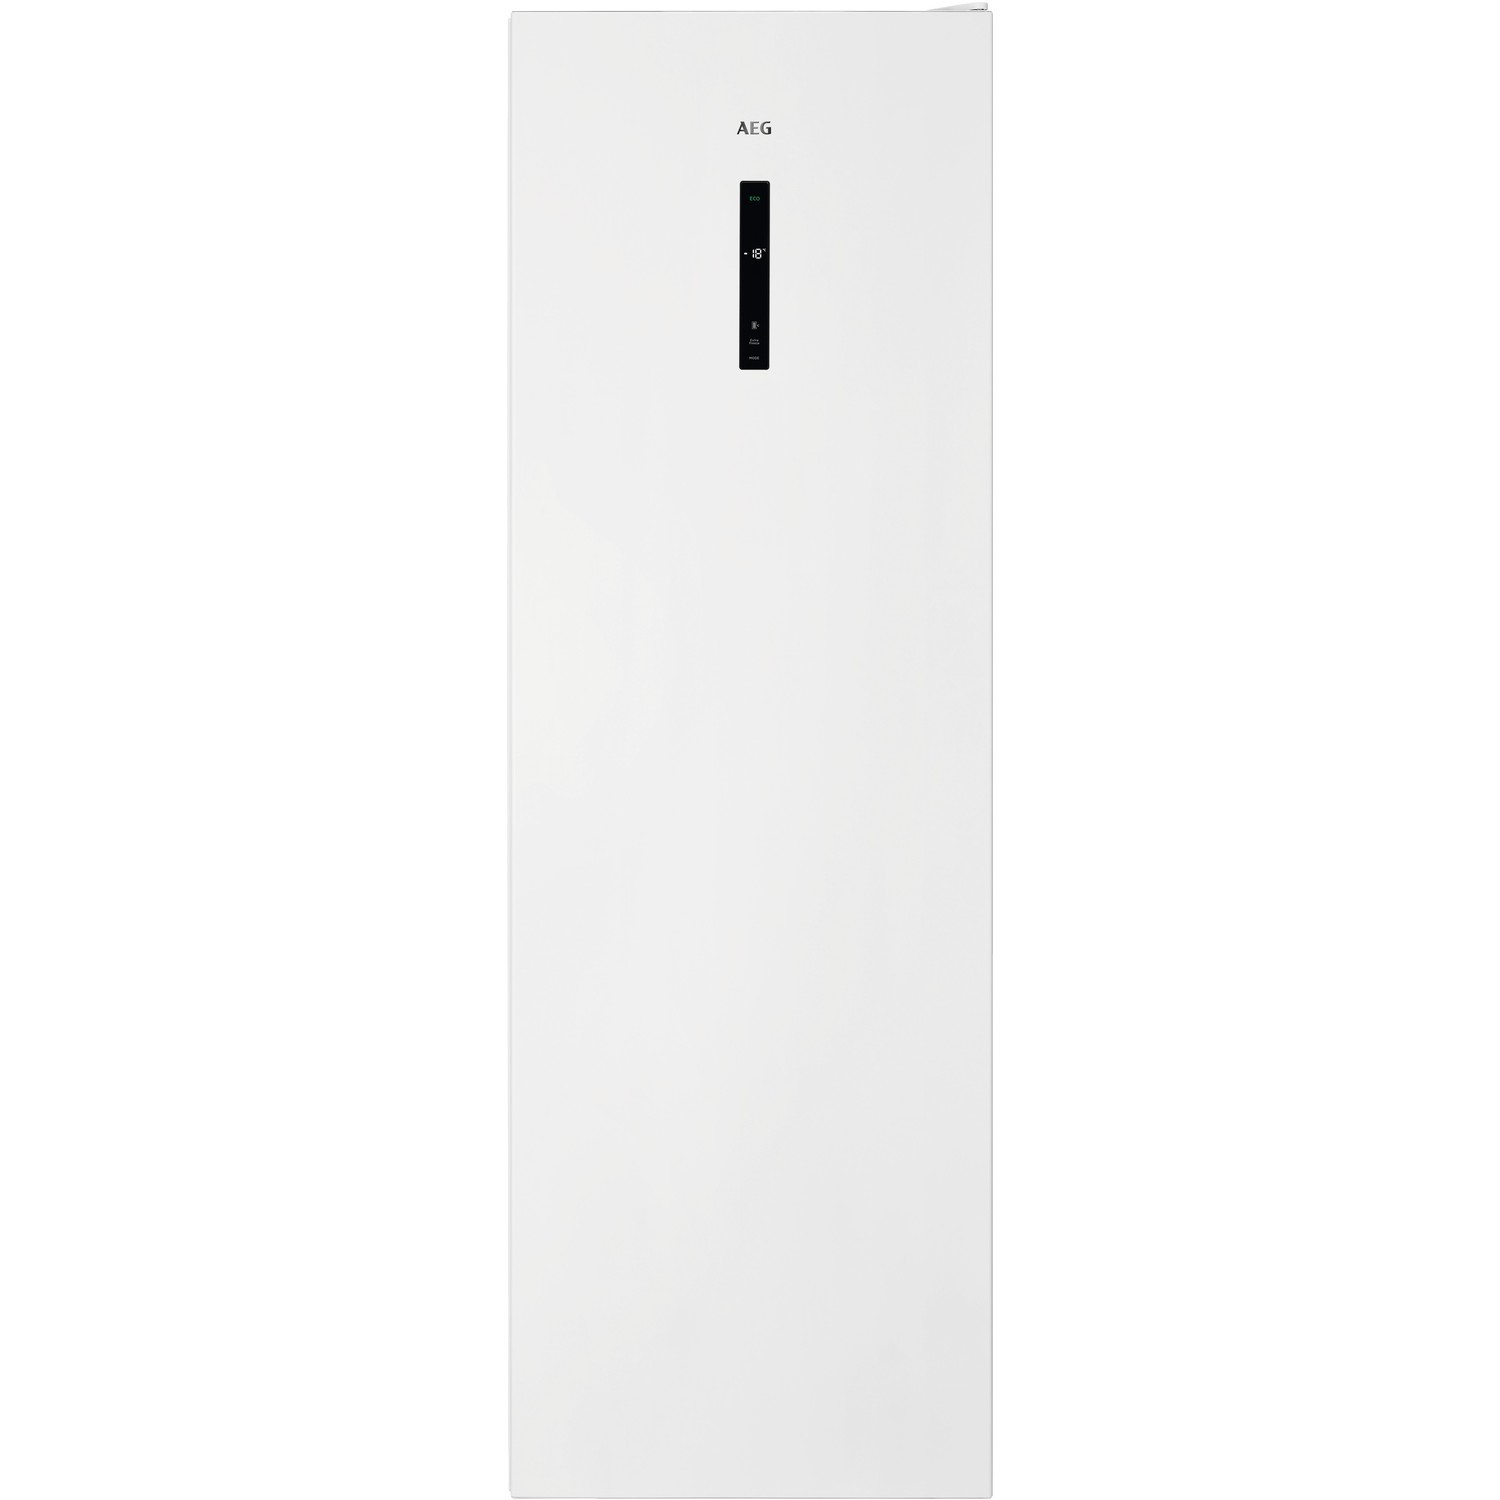 AEG 280 Litres Tall Freestanding Freezer - White